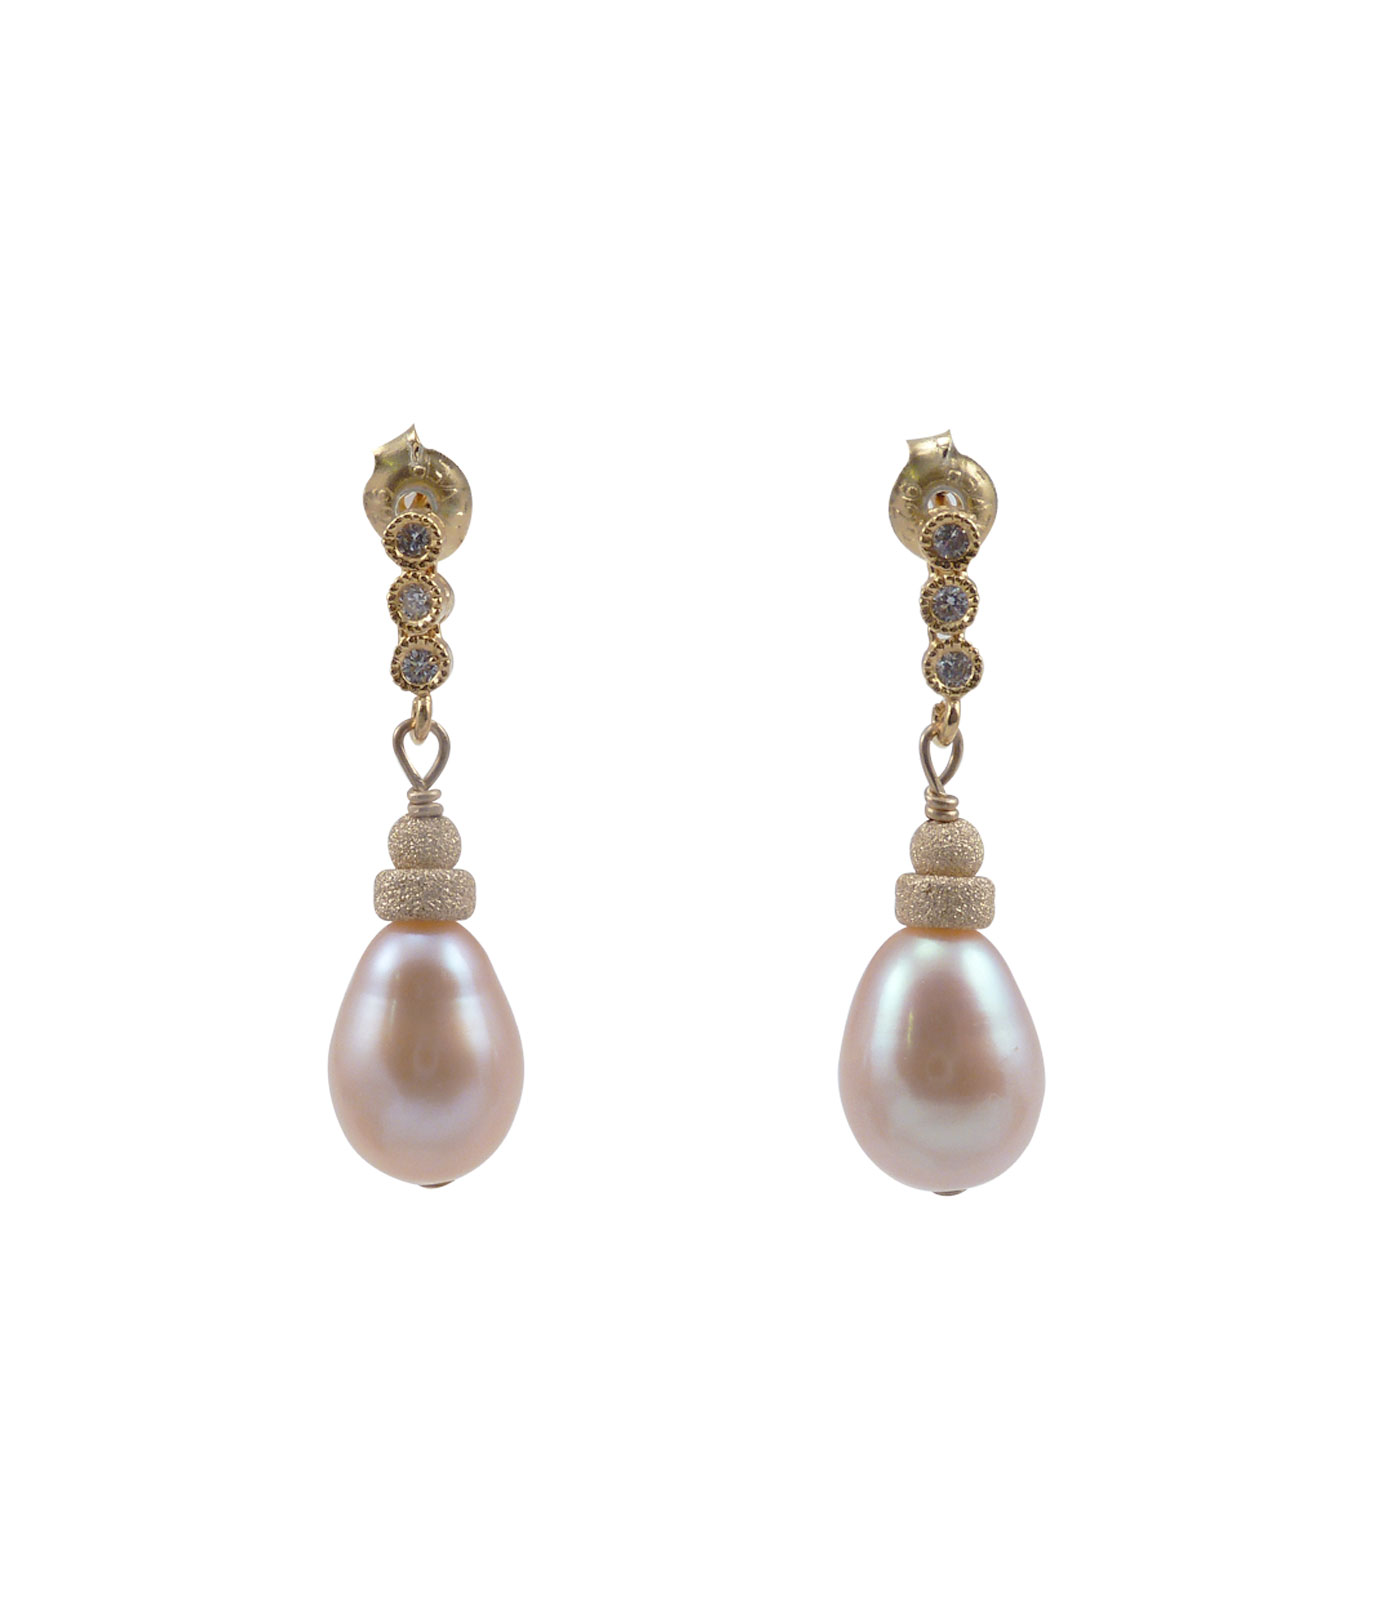 Pearl earrings pink drop-shaped pearls in Vermeil setting